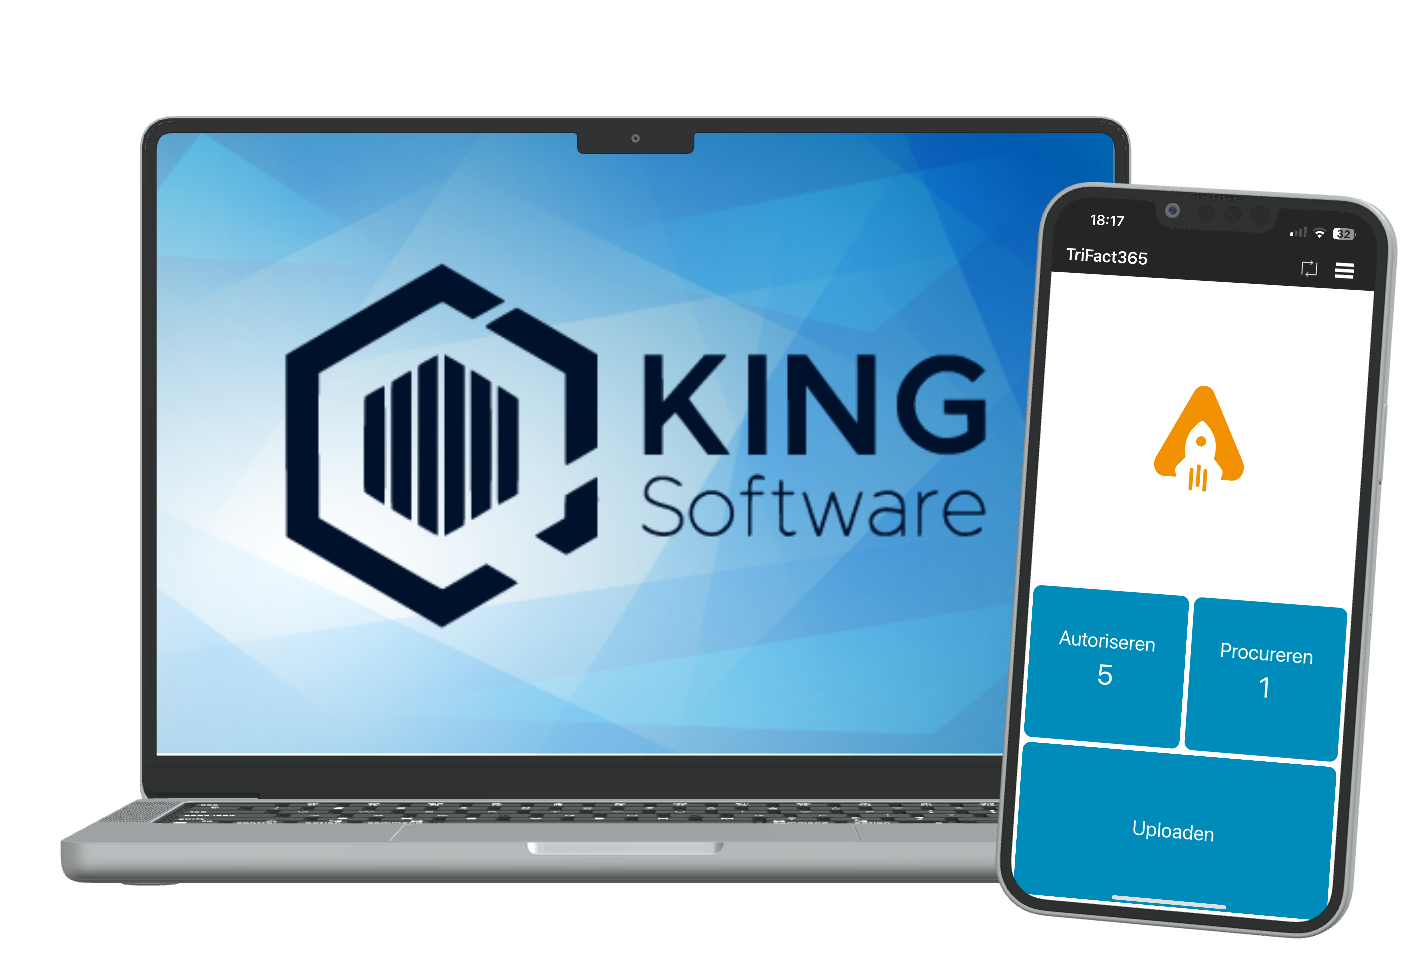 Laptop met King software logo met daarnaast een smartphone met de TriFact365 app